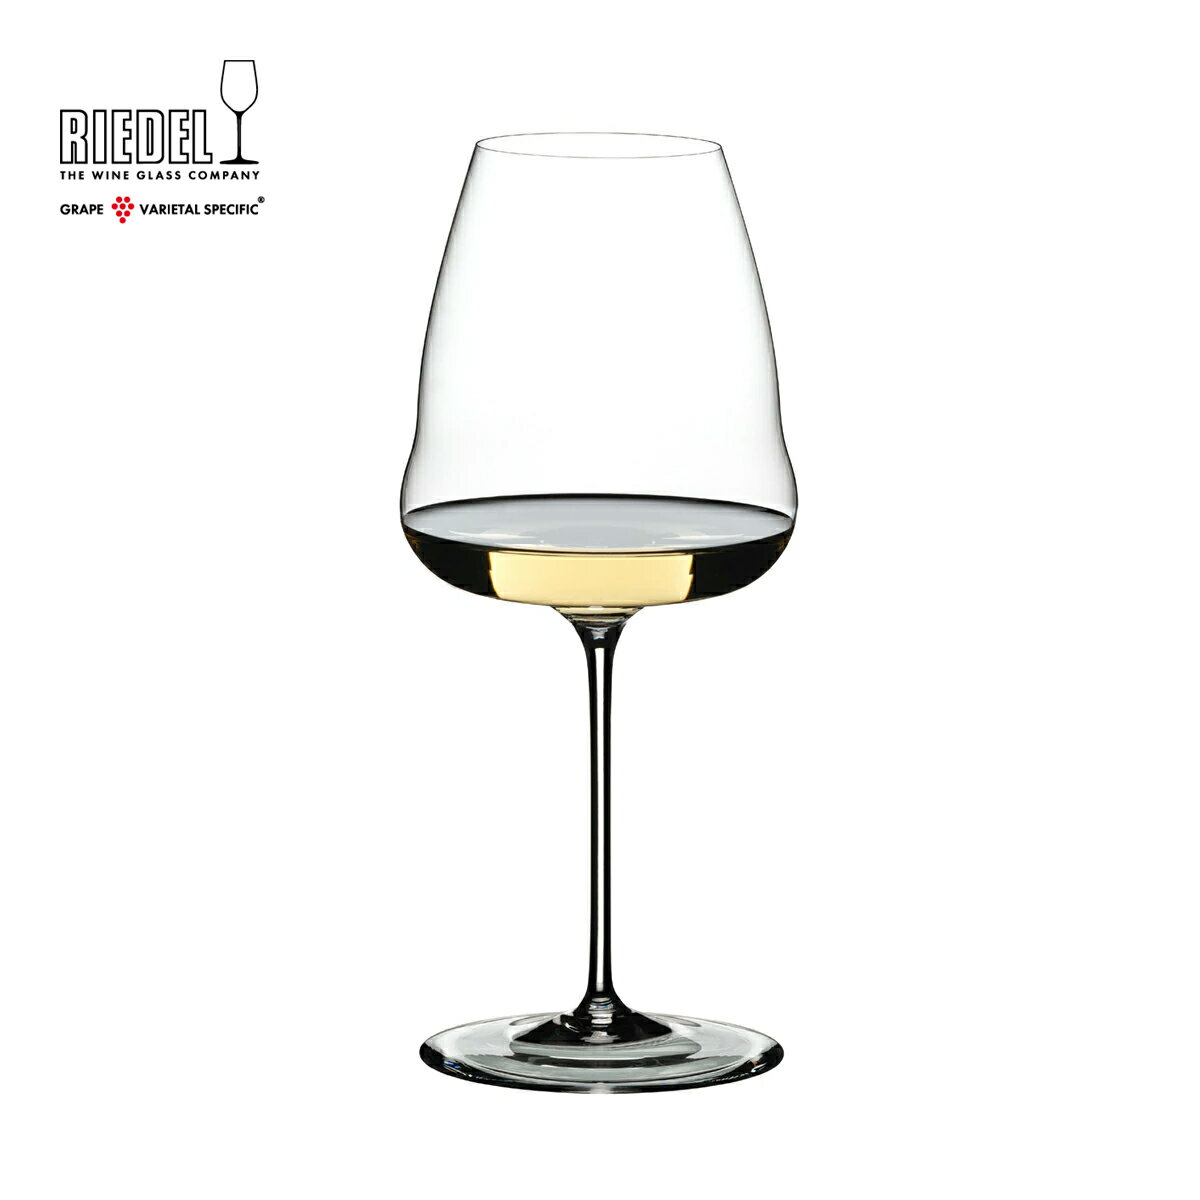 リーデル リーデル公式 リーデル・ワインウイングス ソーヴィニヨン・ブラン 1個入 1234/33 ラッピング無料 RIEDEL ワイングラス